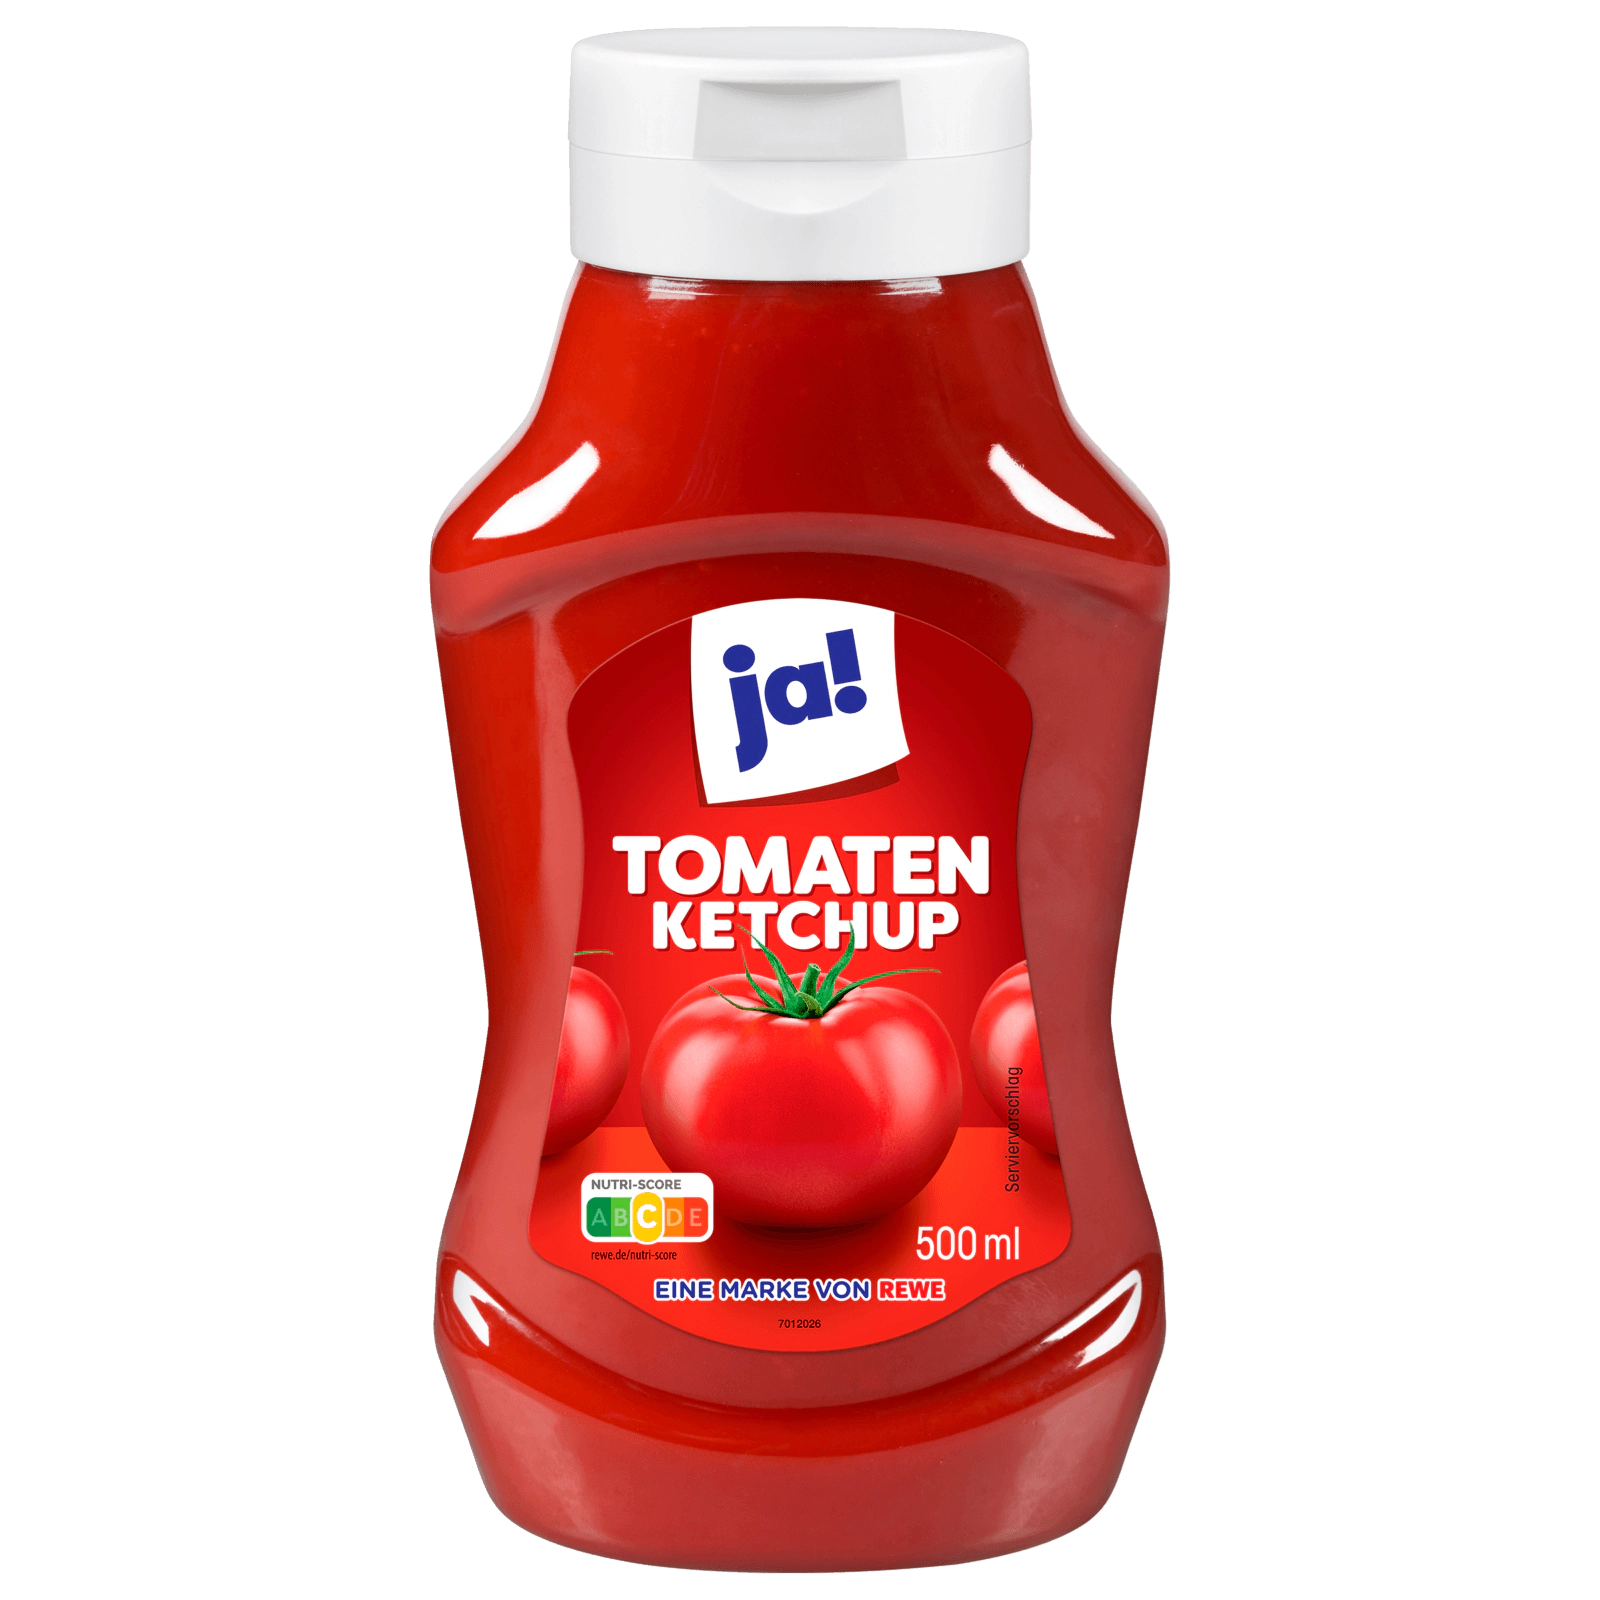 ja! Tomaten-Ketchup 500ml bei REWE online bestellen!